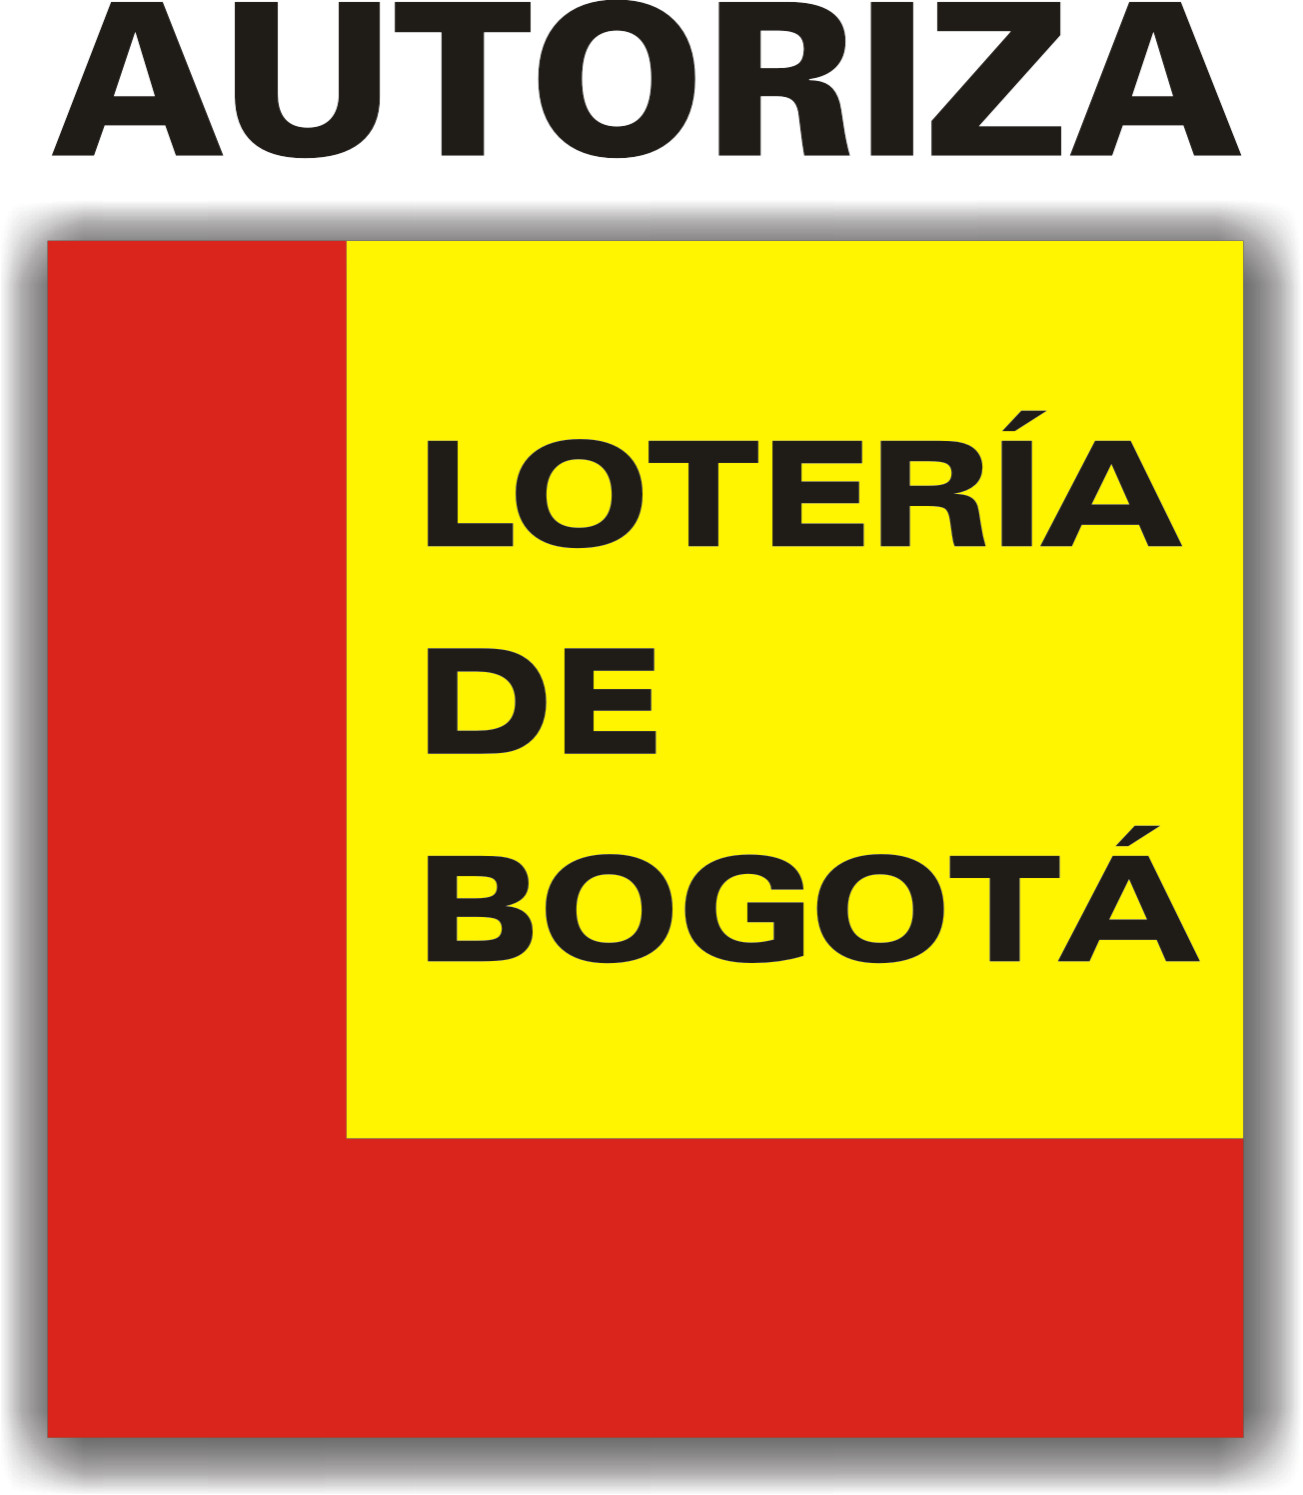 Loteria de Bogota Logo photo - 1